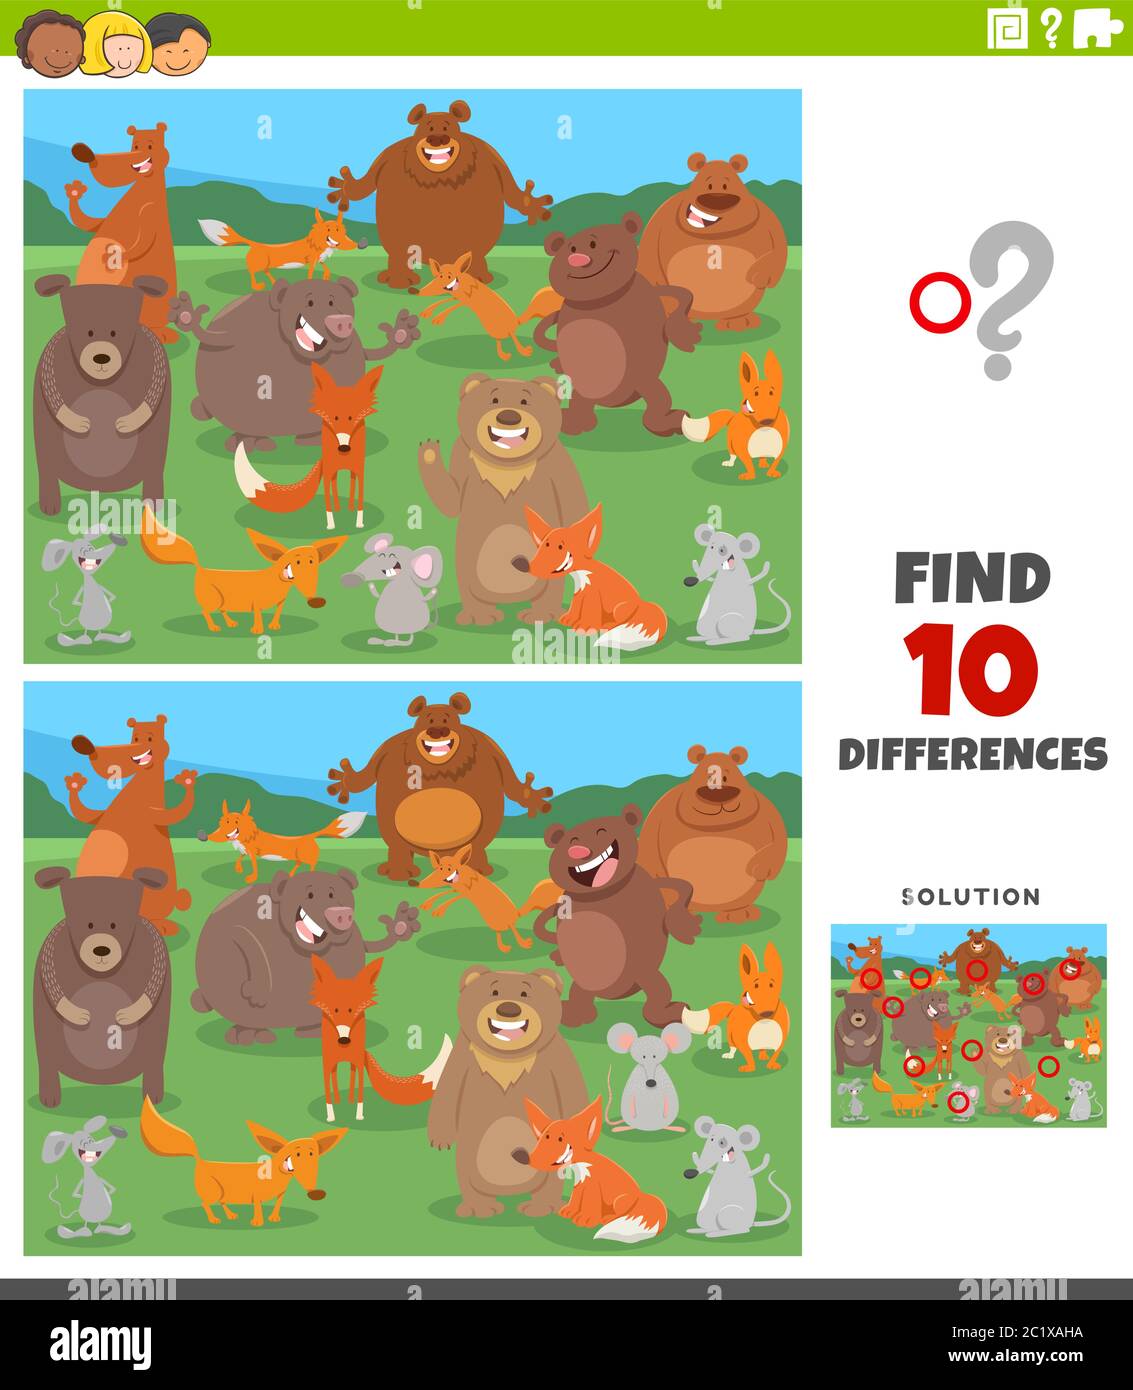 Dessin animé Illustration de trouver des différences entre les images jeu éducatif pour les enfants avec drôle de groupe de caractères d'animal sauvage Illustration de Vecteur